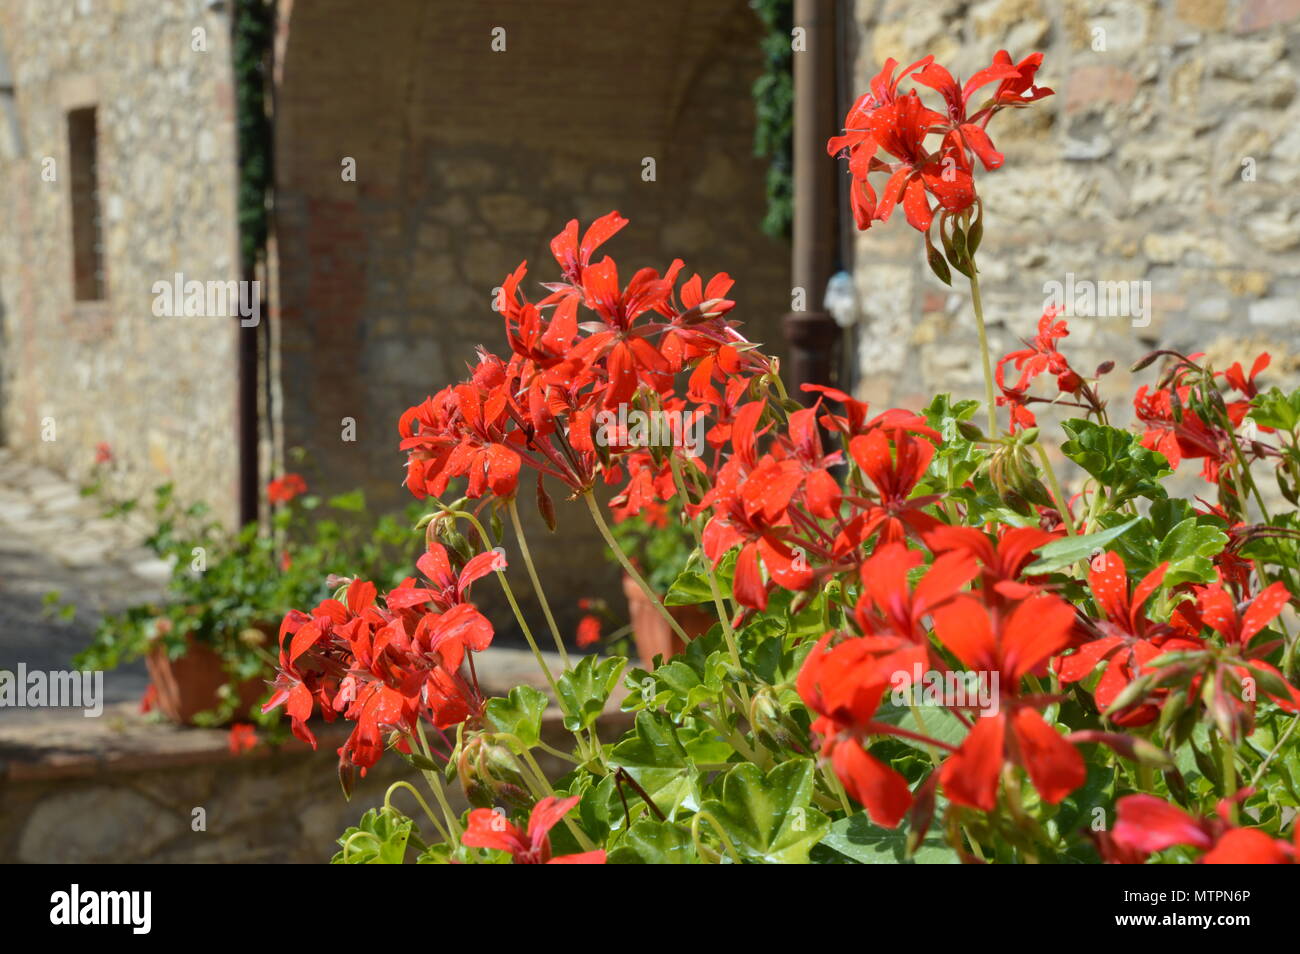 Rote Blumen funkelnd in der Toskana Sonne, fangen das Sonnenlicht und blühende direkt aus dem Bild Stockfoto